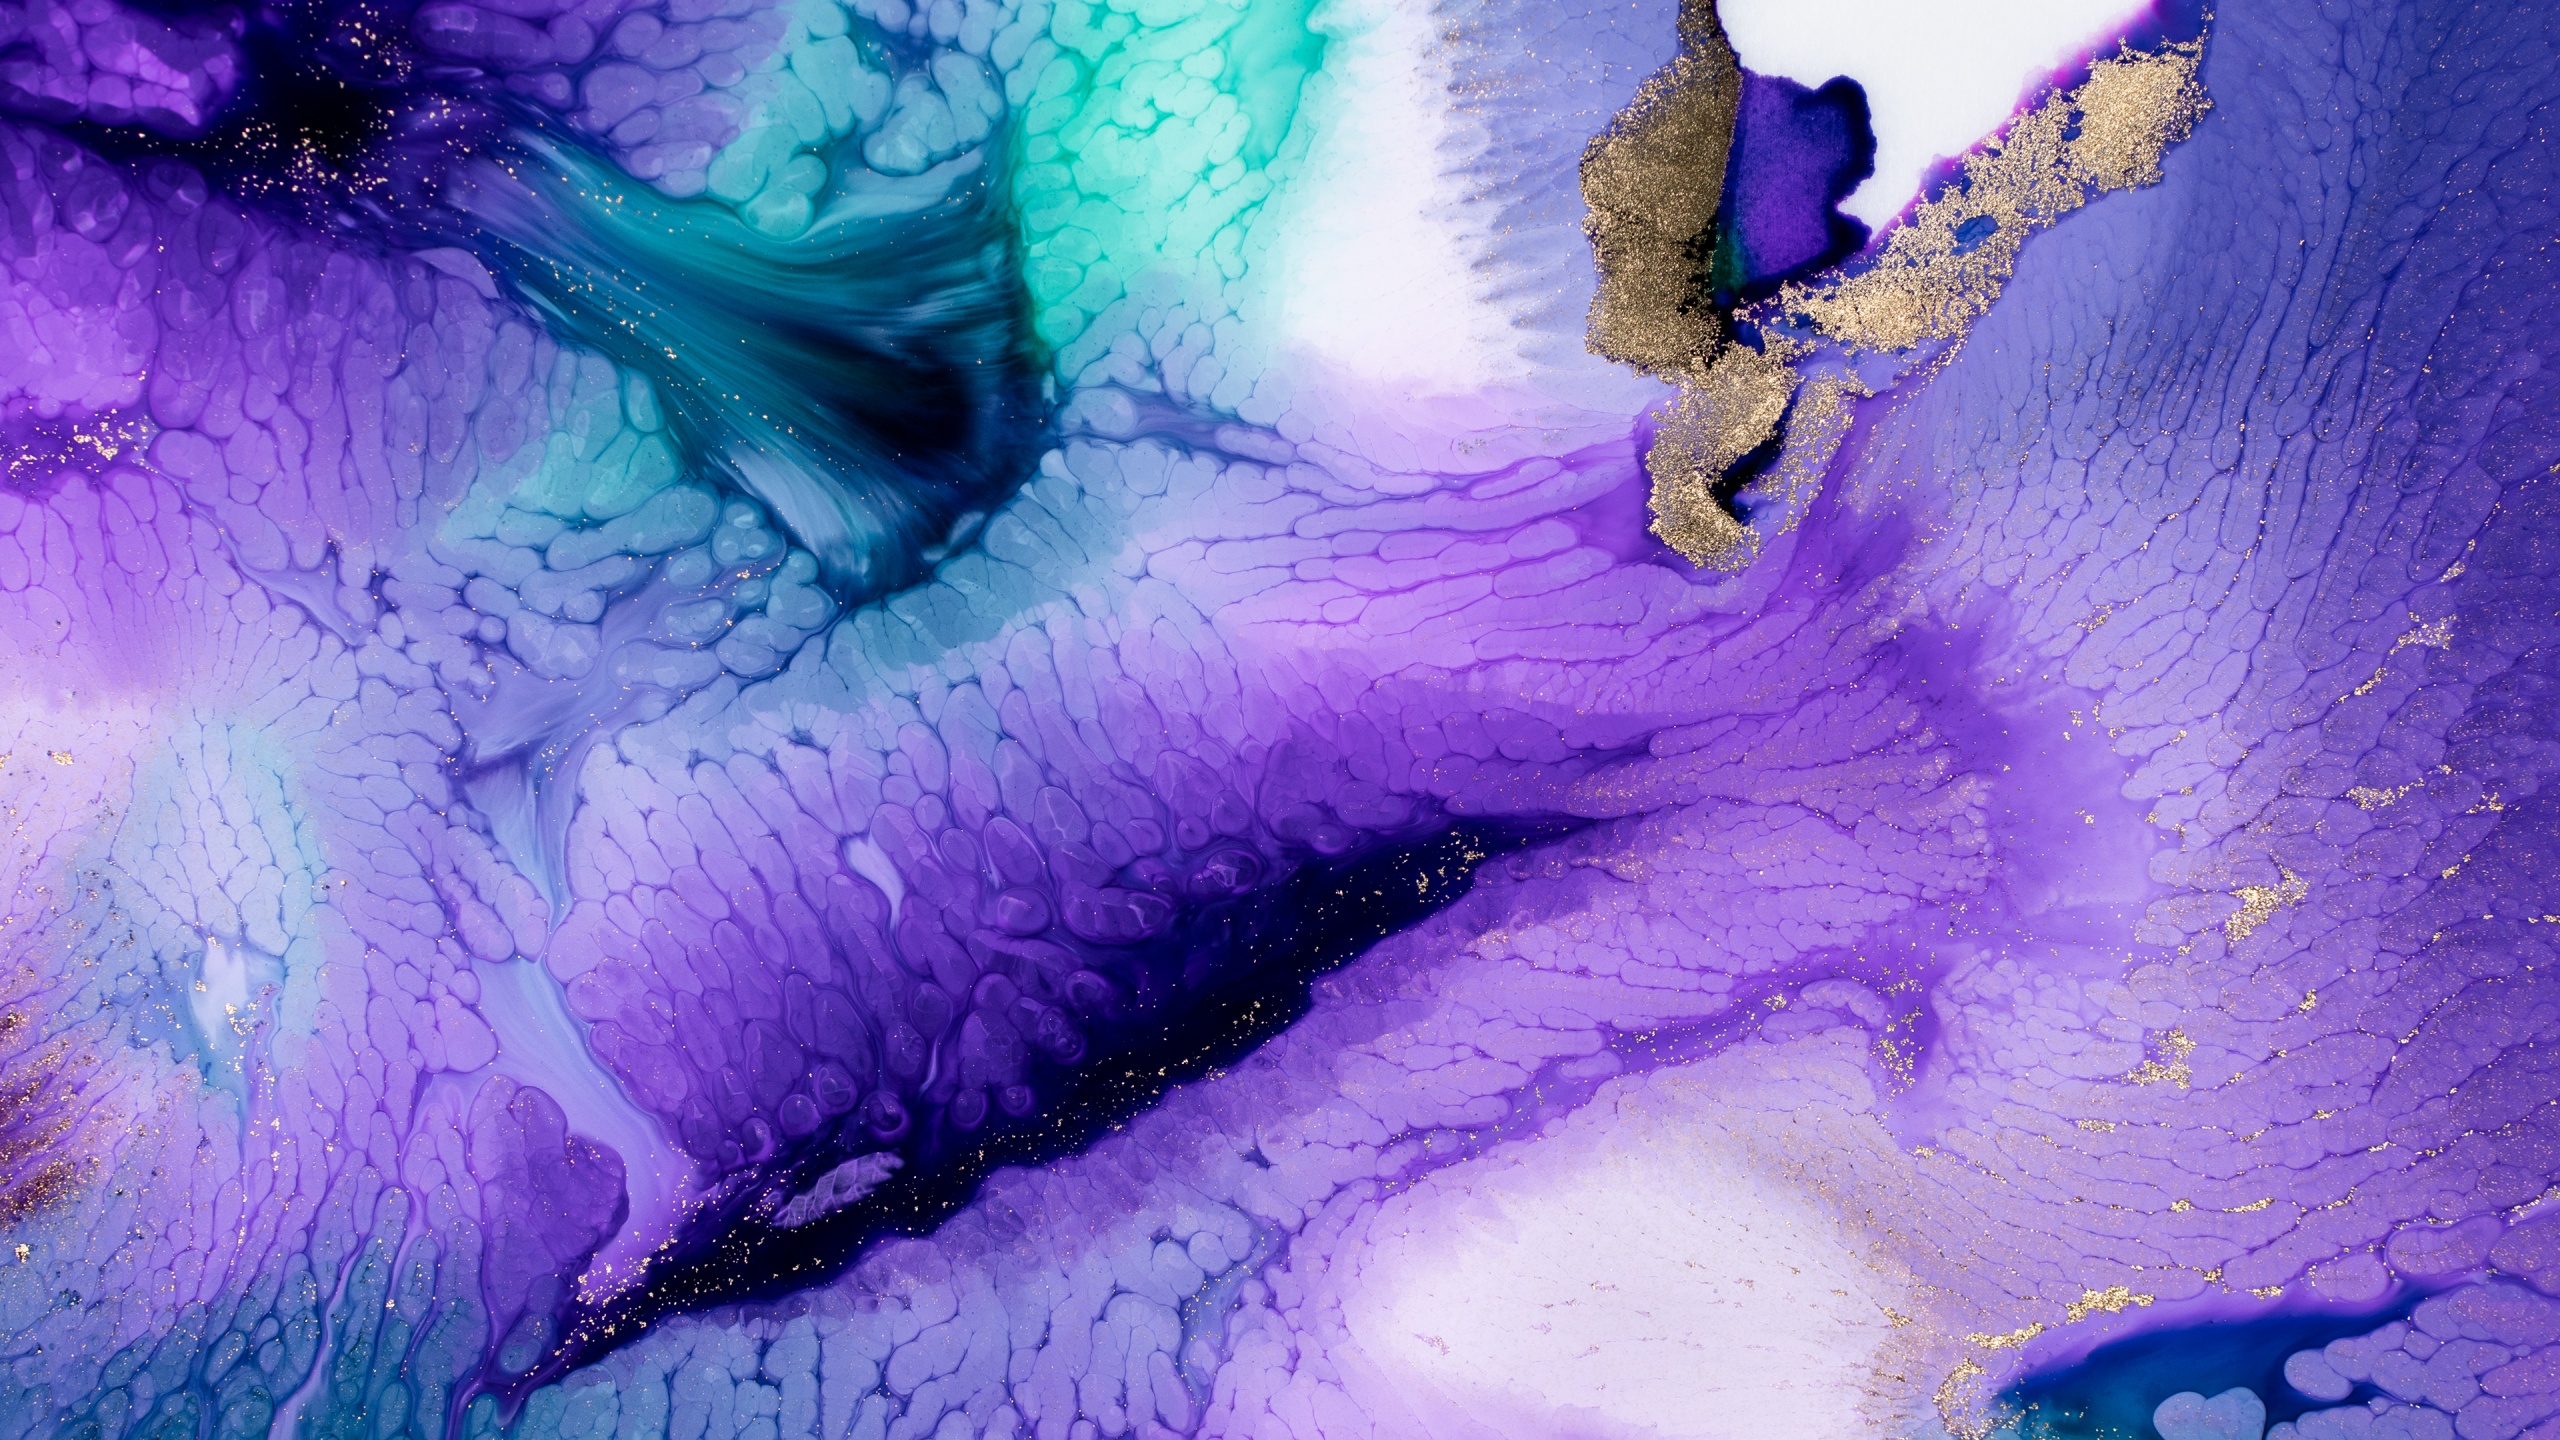 Với hình nền Liquid art Wallpaper 4K, Pearl ink, Purple, Abstract, #1339, bạn sẽ được trải nghiệm vẻ đẹp của nghệ thuật lỏng. Nét đẹp tuyệt vời từ màu tím mê hoặc và cảm giác mịn màng sẽ đưa bạn vào một thế giới ảo giữa sắc màu.